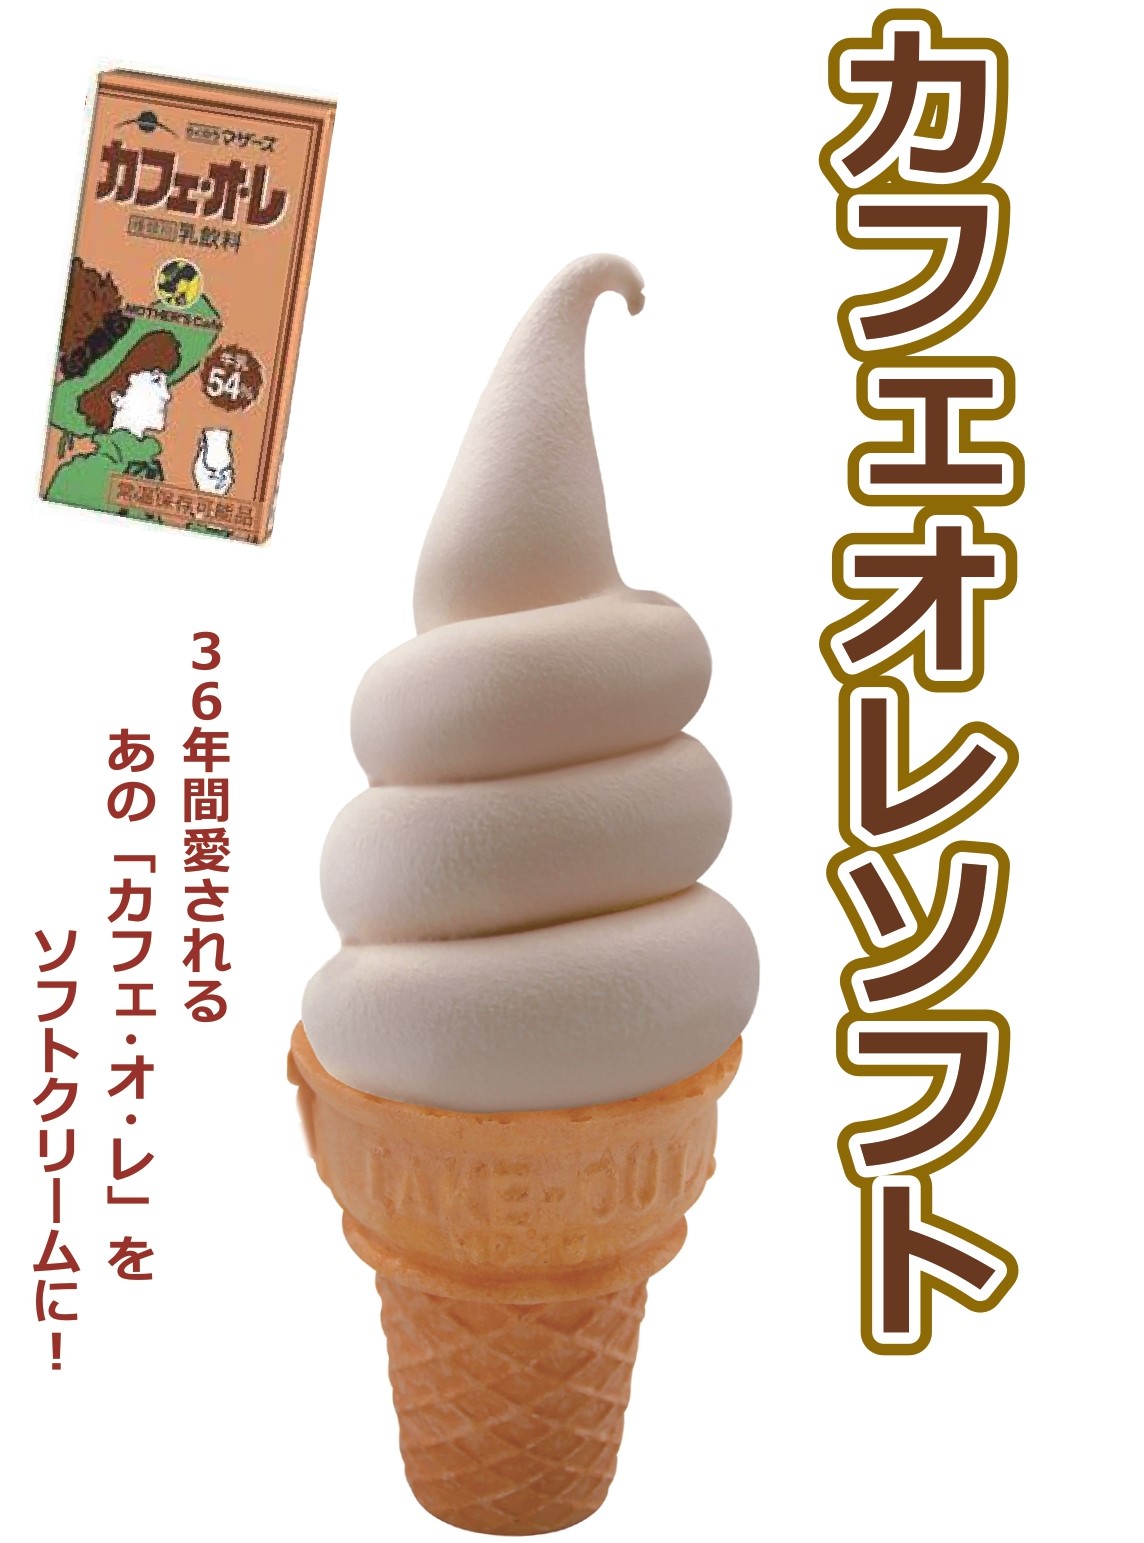 あの人気ドリンクがソフトクリームに Sakura Machi Kumamoto サクラマチ クマモト